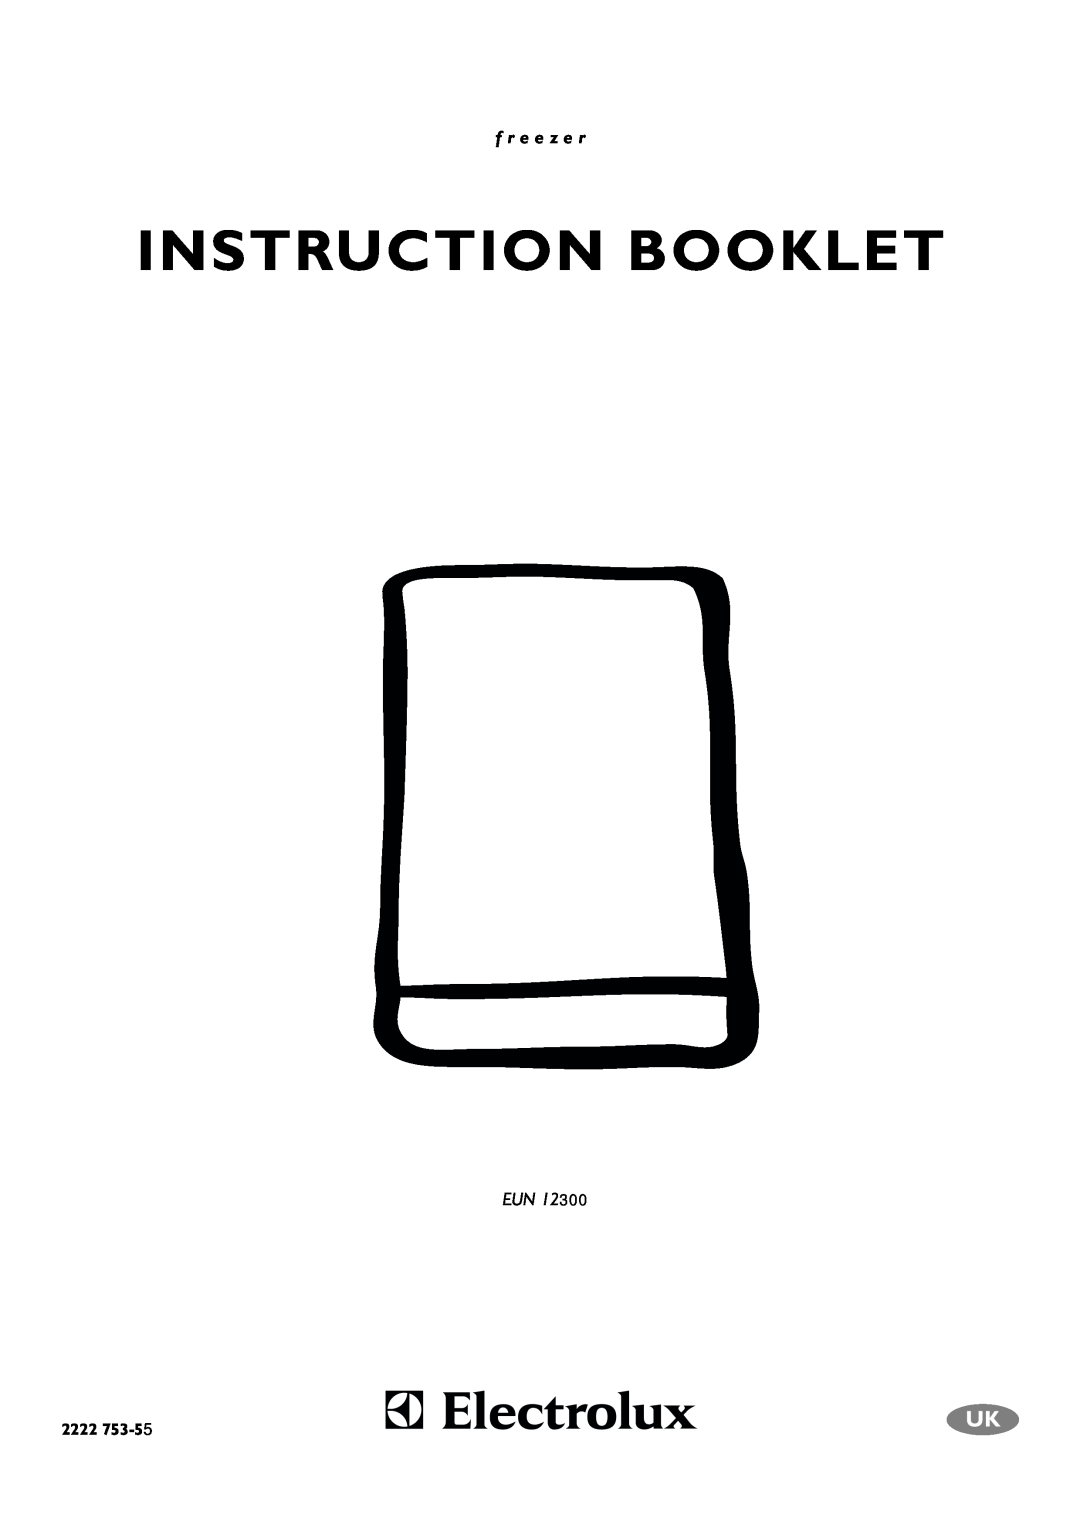 Electrolux EUN 12300 manual Instruction Booklet, f r e e z e r, 2222 